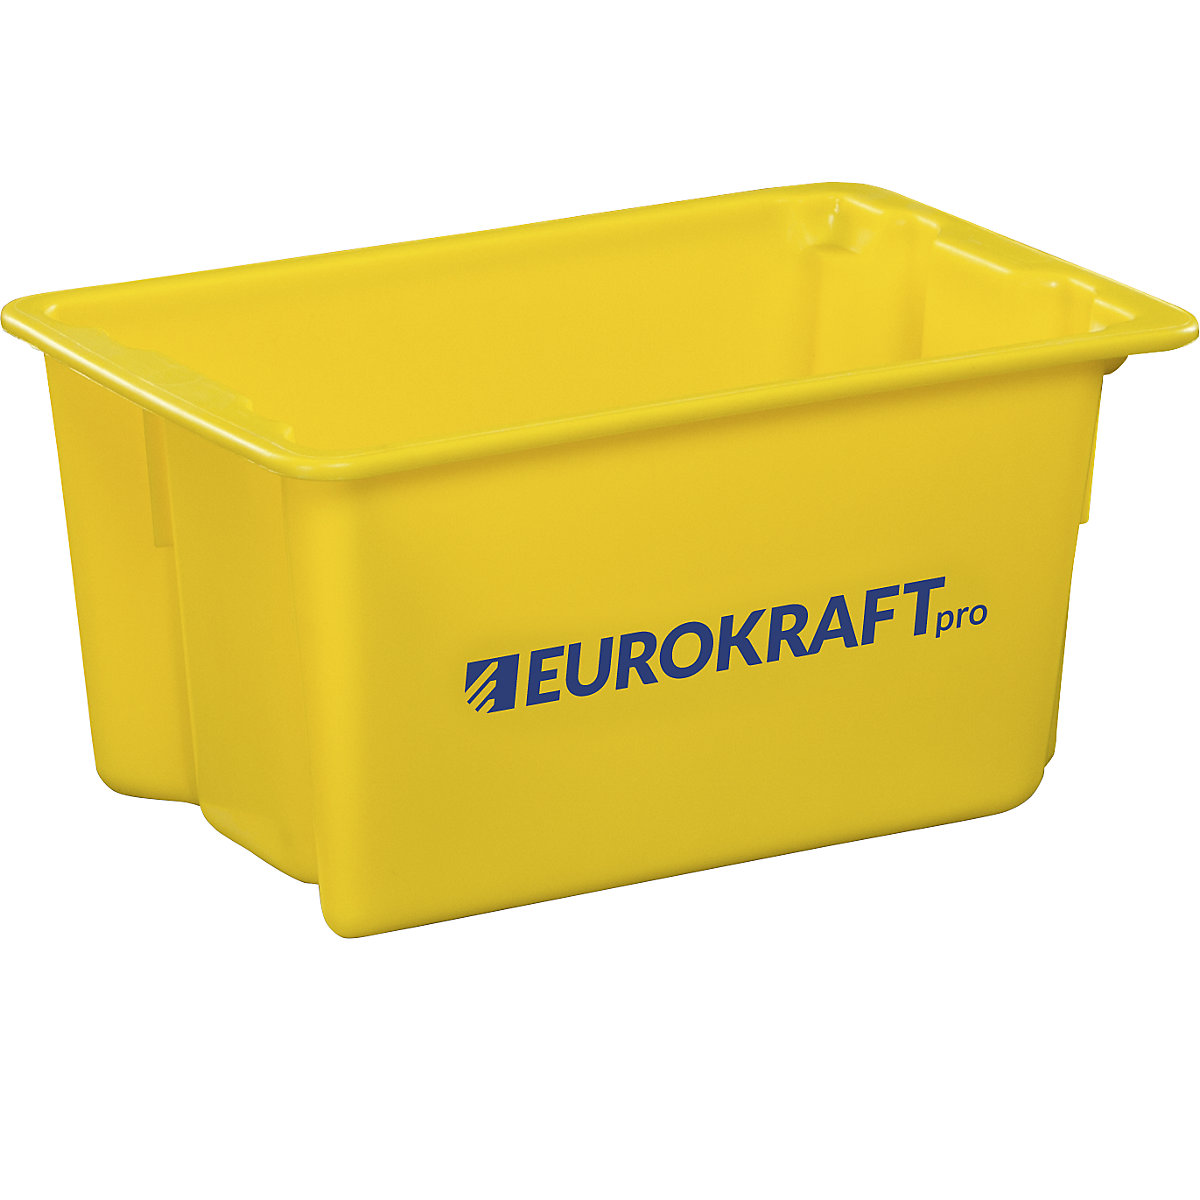 EUROKRAFTpro – Spremnik za slaganje od polipropilena pogodnog za kontakt s prehrambenim proizvodima, volumen 50 l, pak. 3 kom., zatvorene stijenke i dno, u žutoj boji